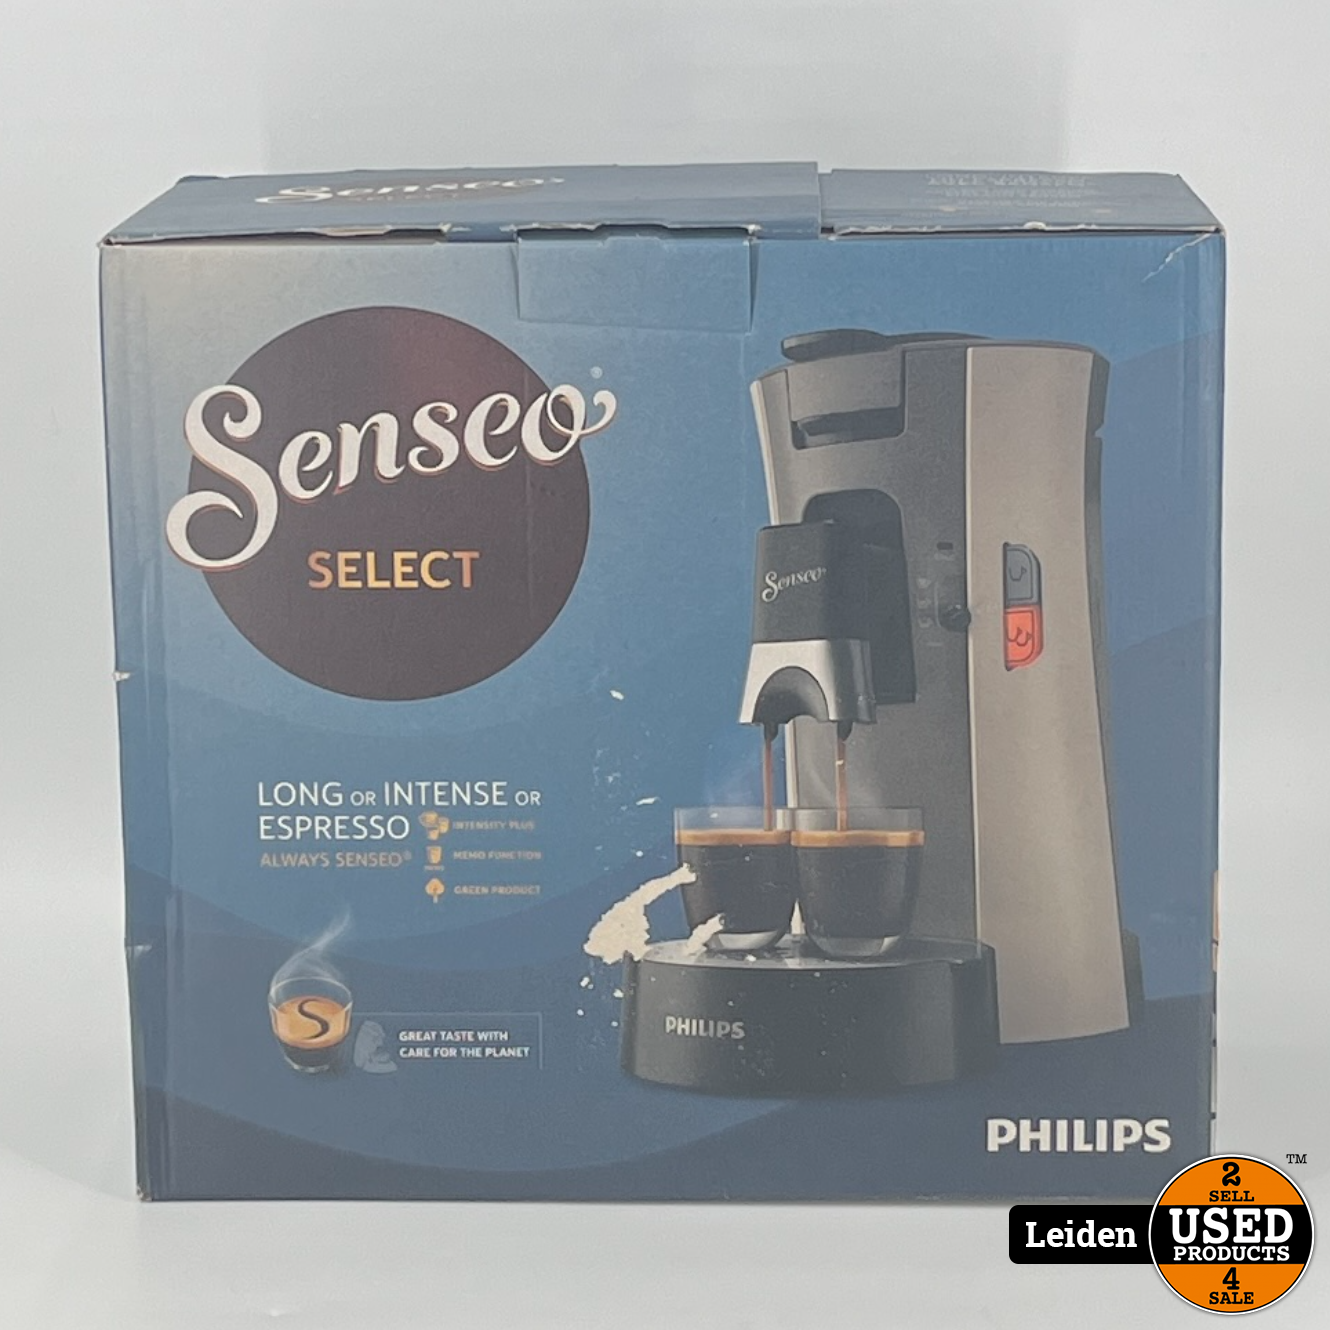 Mier Bevriezen Hulpeloosheid Philips CSA240/30 Senseo Select Koffiepadmachine Beige/Grijs (NIEUW uit  doos) - Used Products Leiden